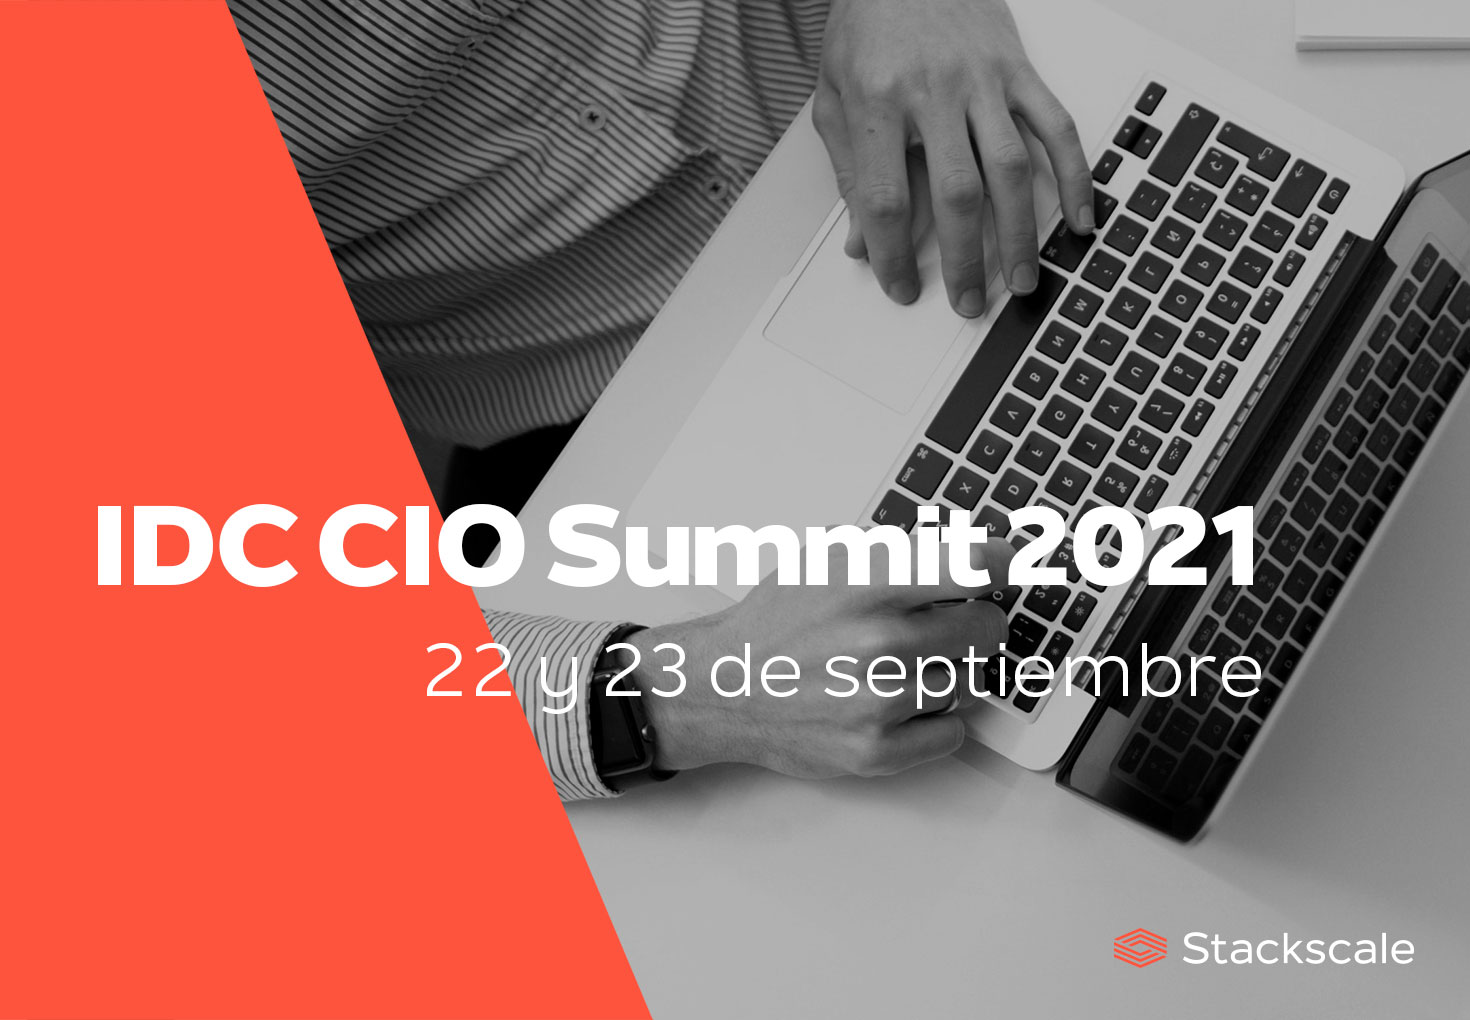 Stackscale en el IDC CIO Summit 2021 en España